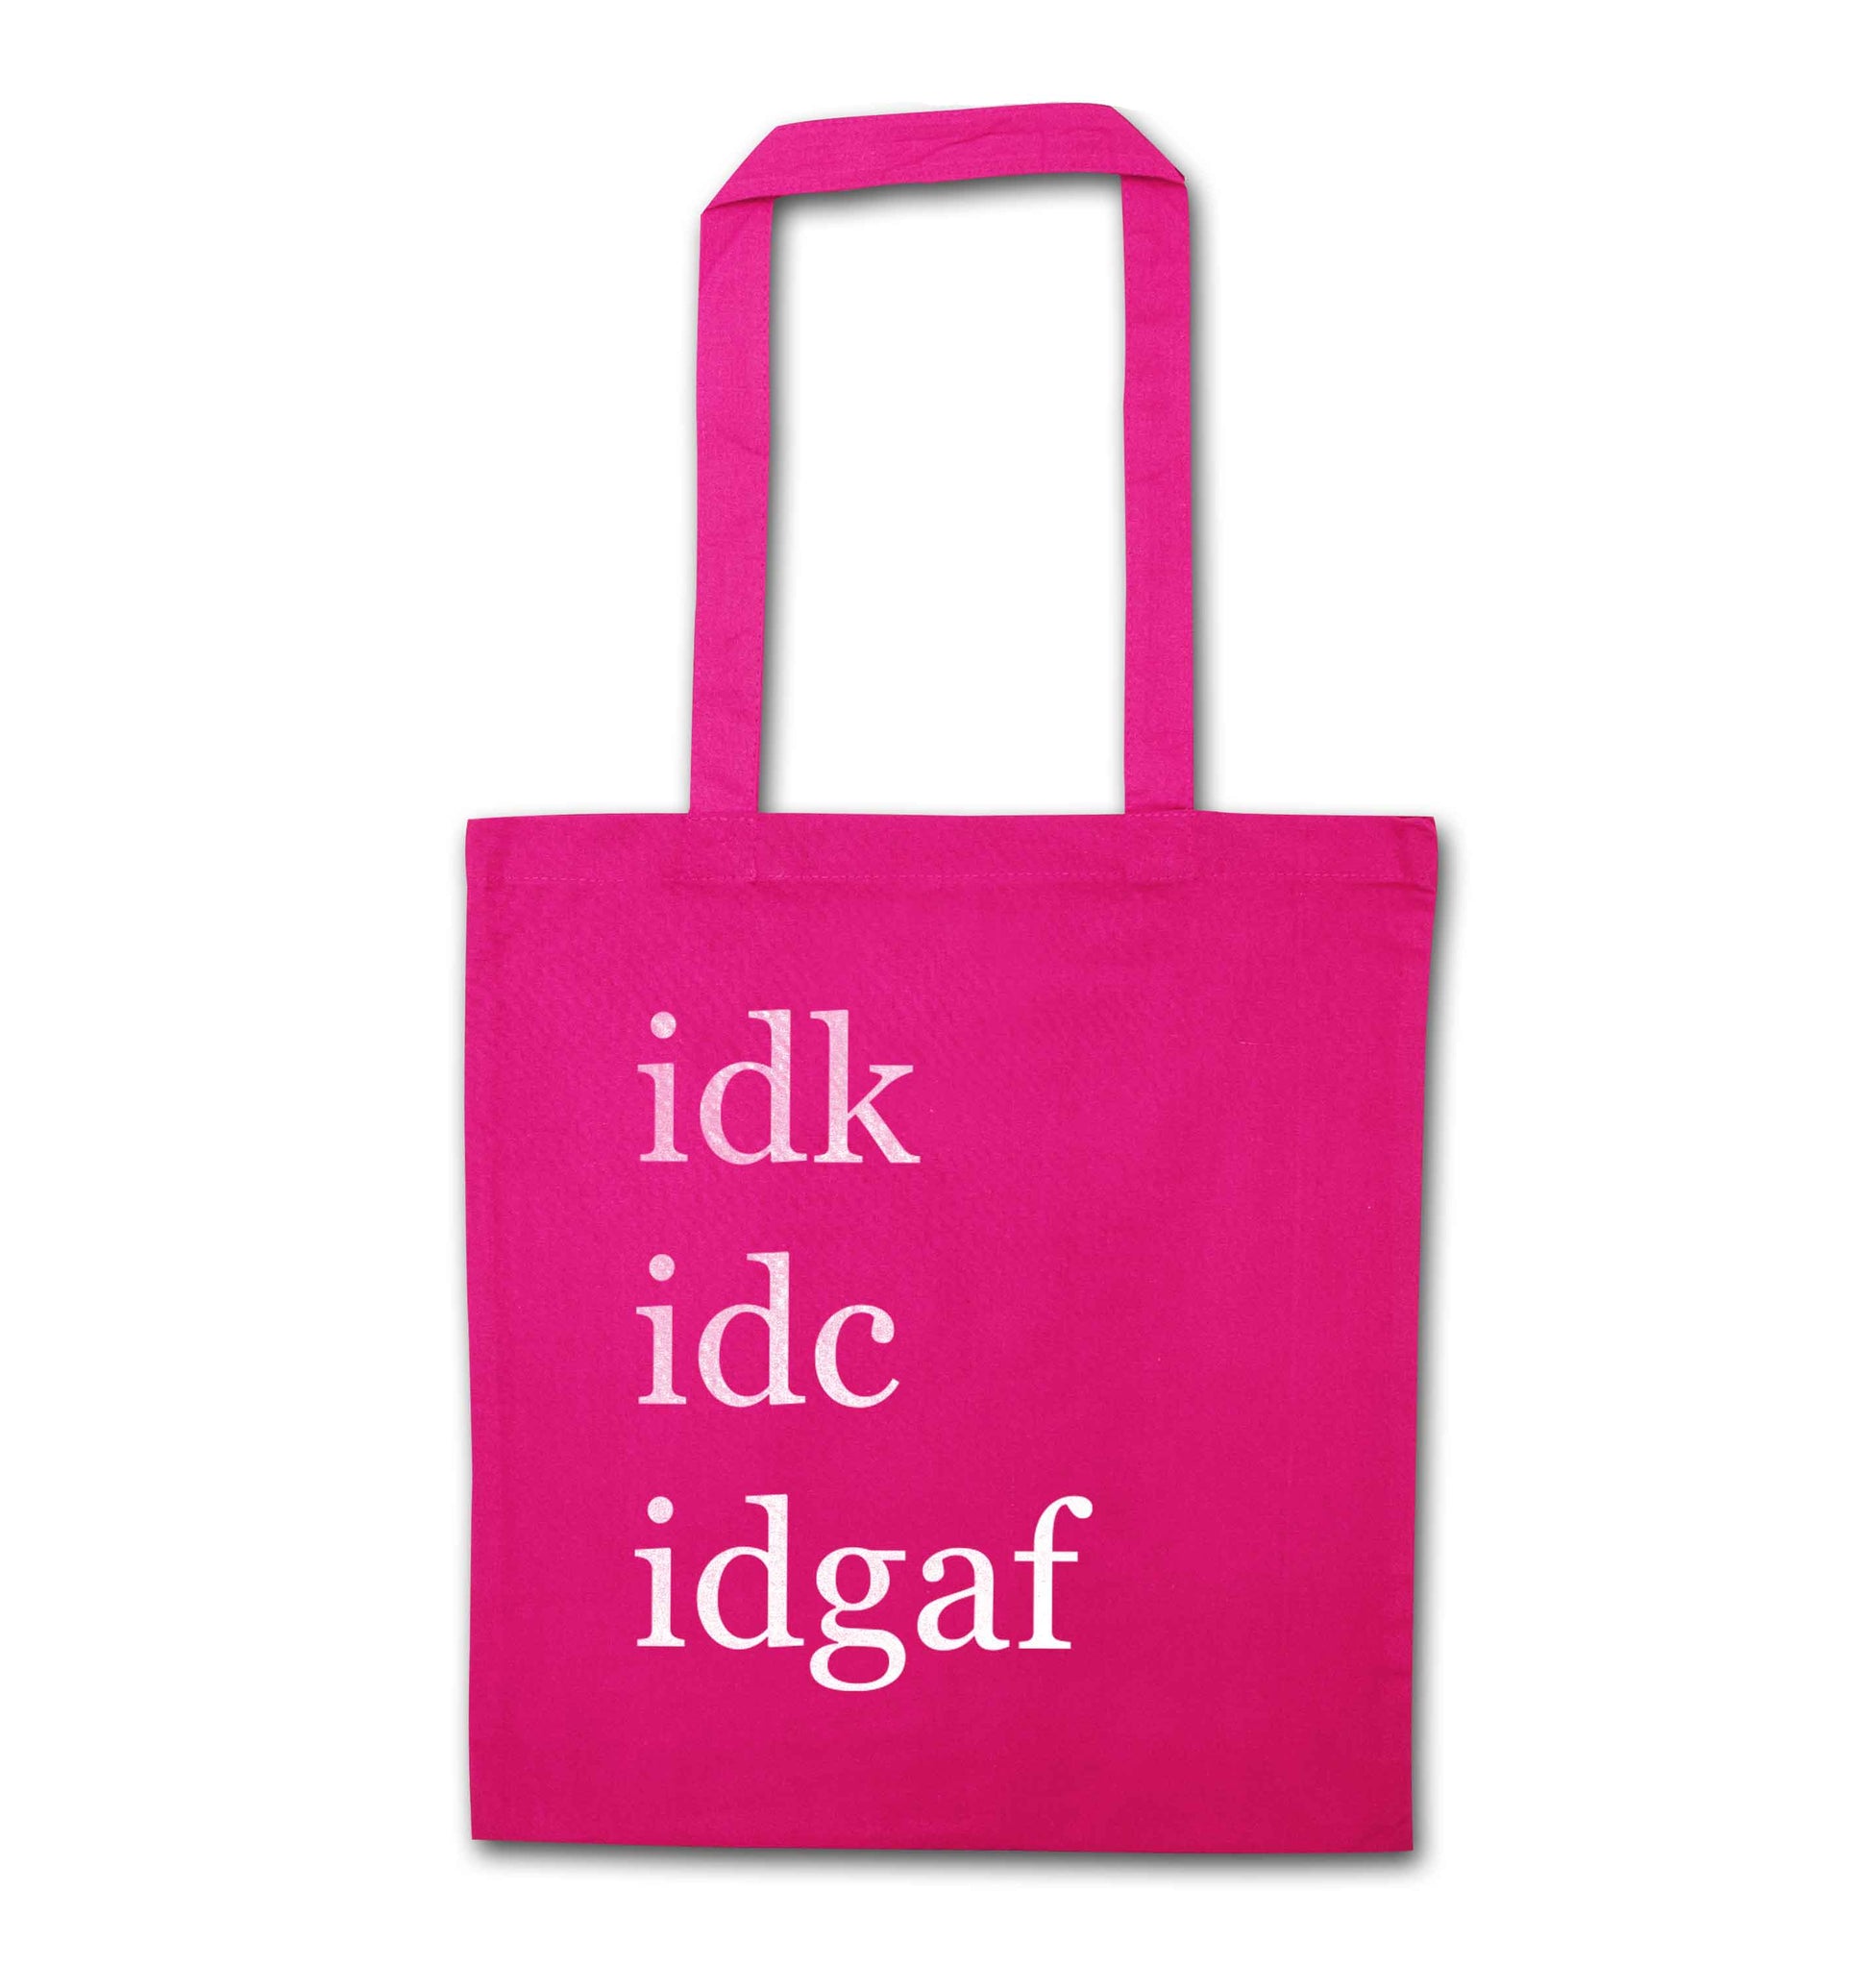 Idk Idc Idgaf pink tote bag